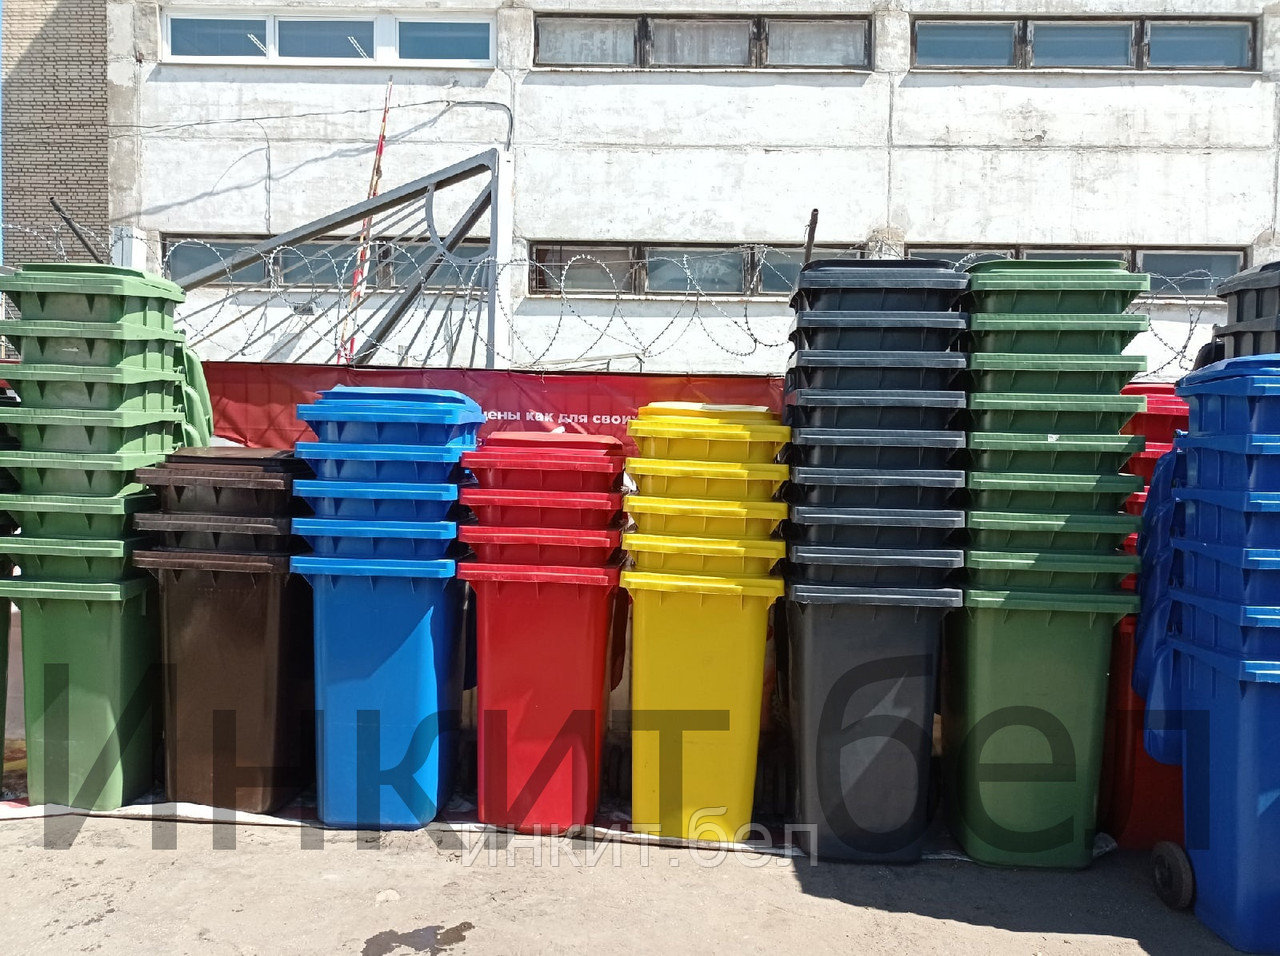 Мусорный контейнер пластиковый ESE 240 литров, Германия. Работаем с юр. и физ. лицами., фото 1